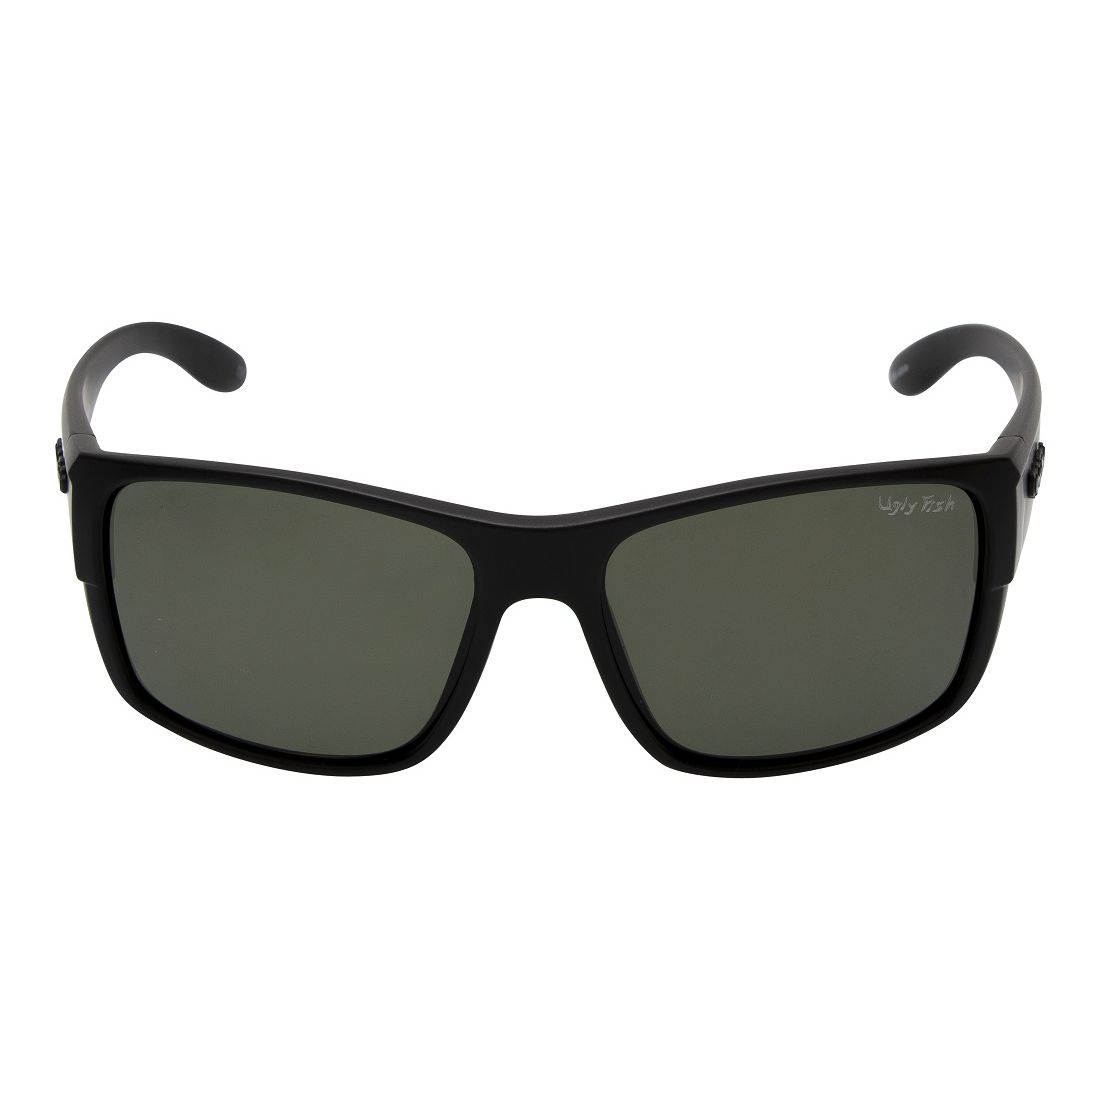 Atlas Prescription Sunglasses: Frame + Add Custom Lenses